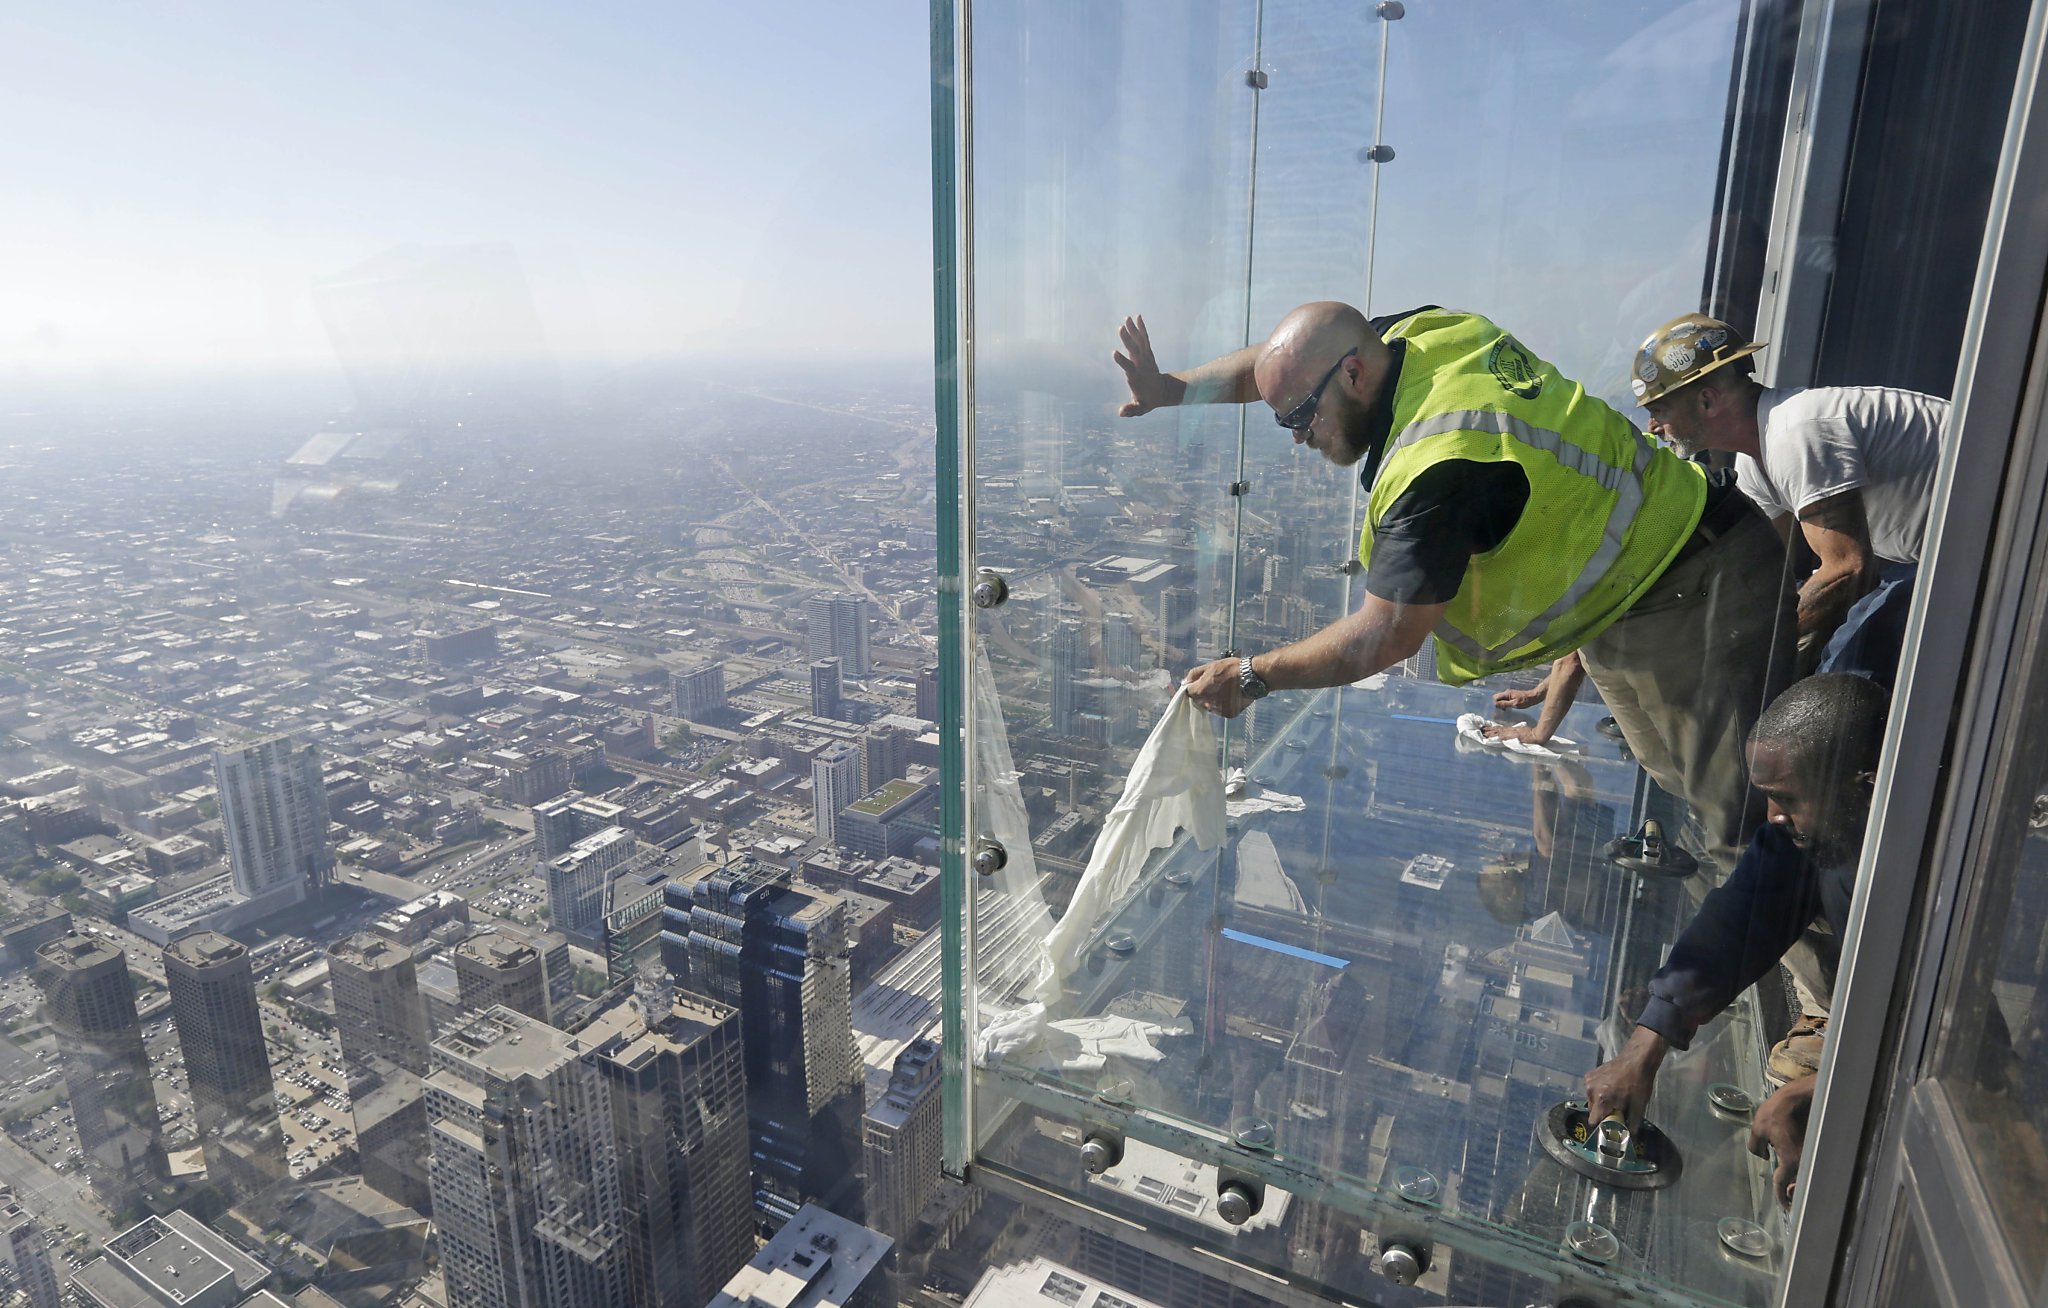 Падение в трещину. Уиллис Тауэр смотровая площадка. Стеклянный балкон на 103-м этаже небоскрёба в Чикаго. Смотровая площадка Скайдек в Уиллис-Тауэр. Уиллис Тауэр на крыше.